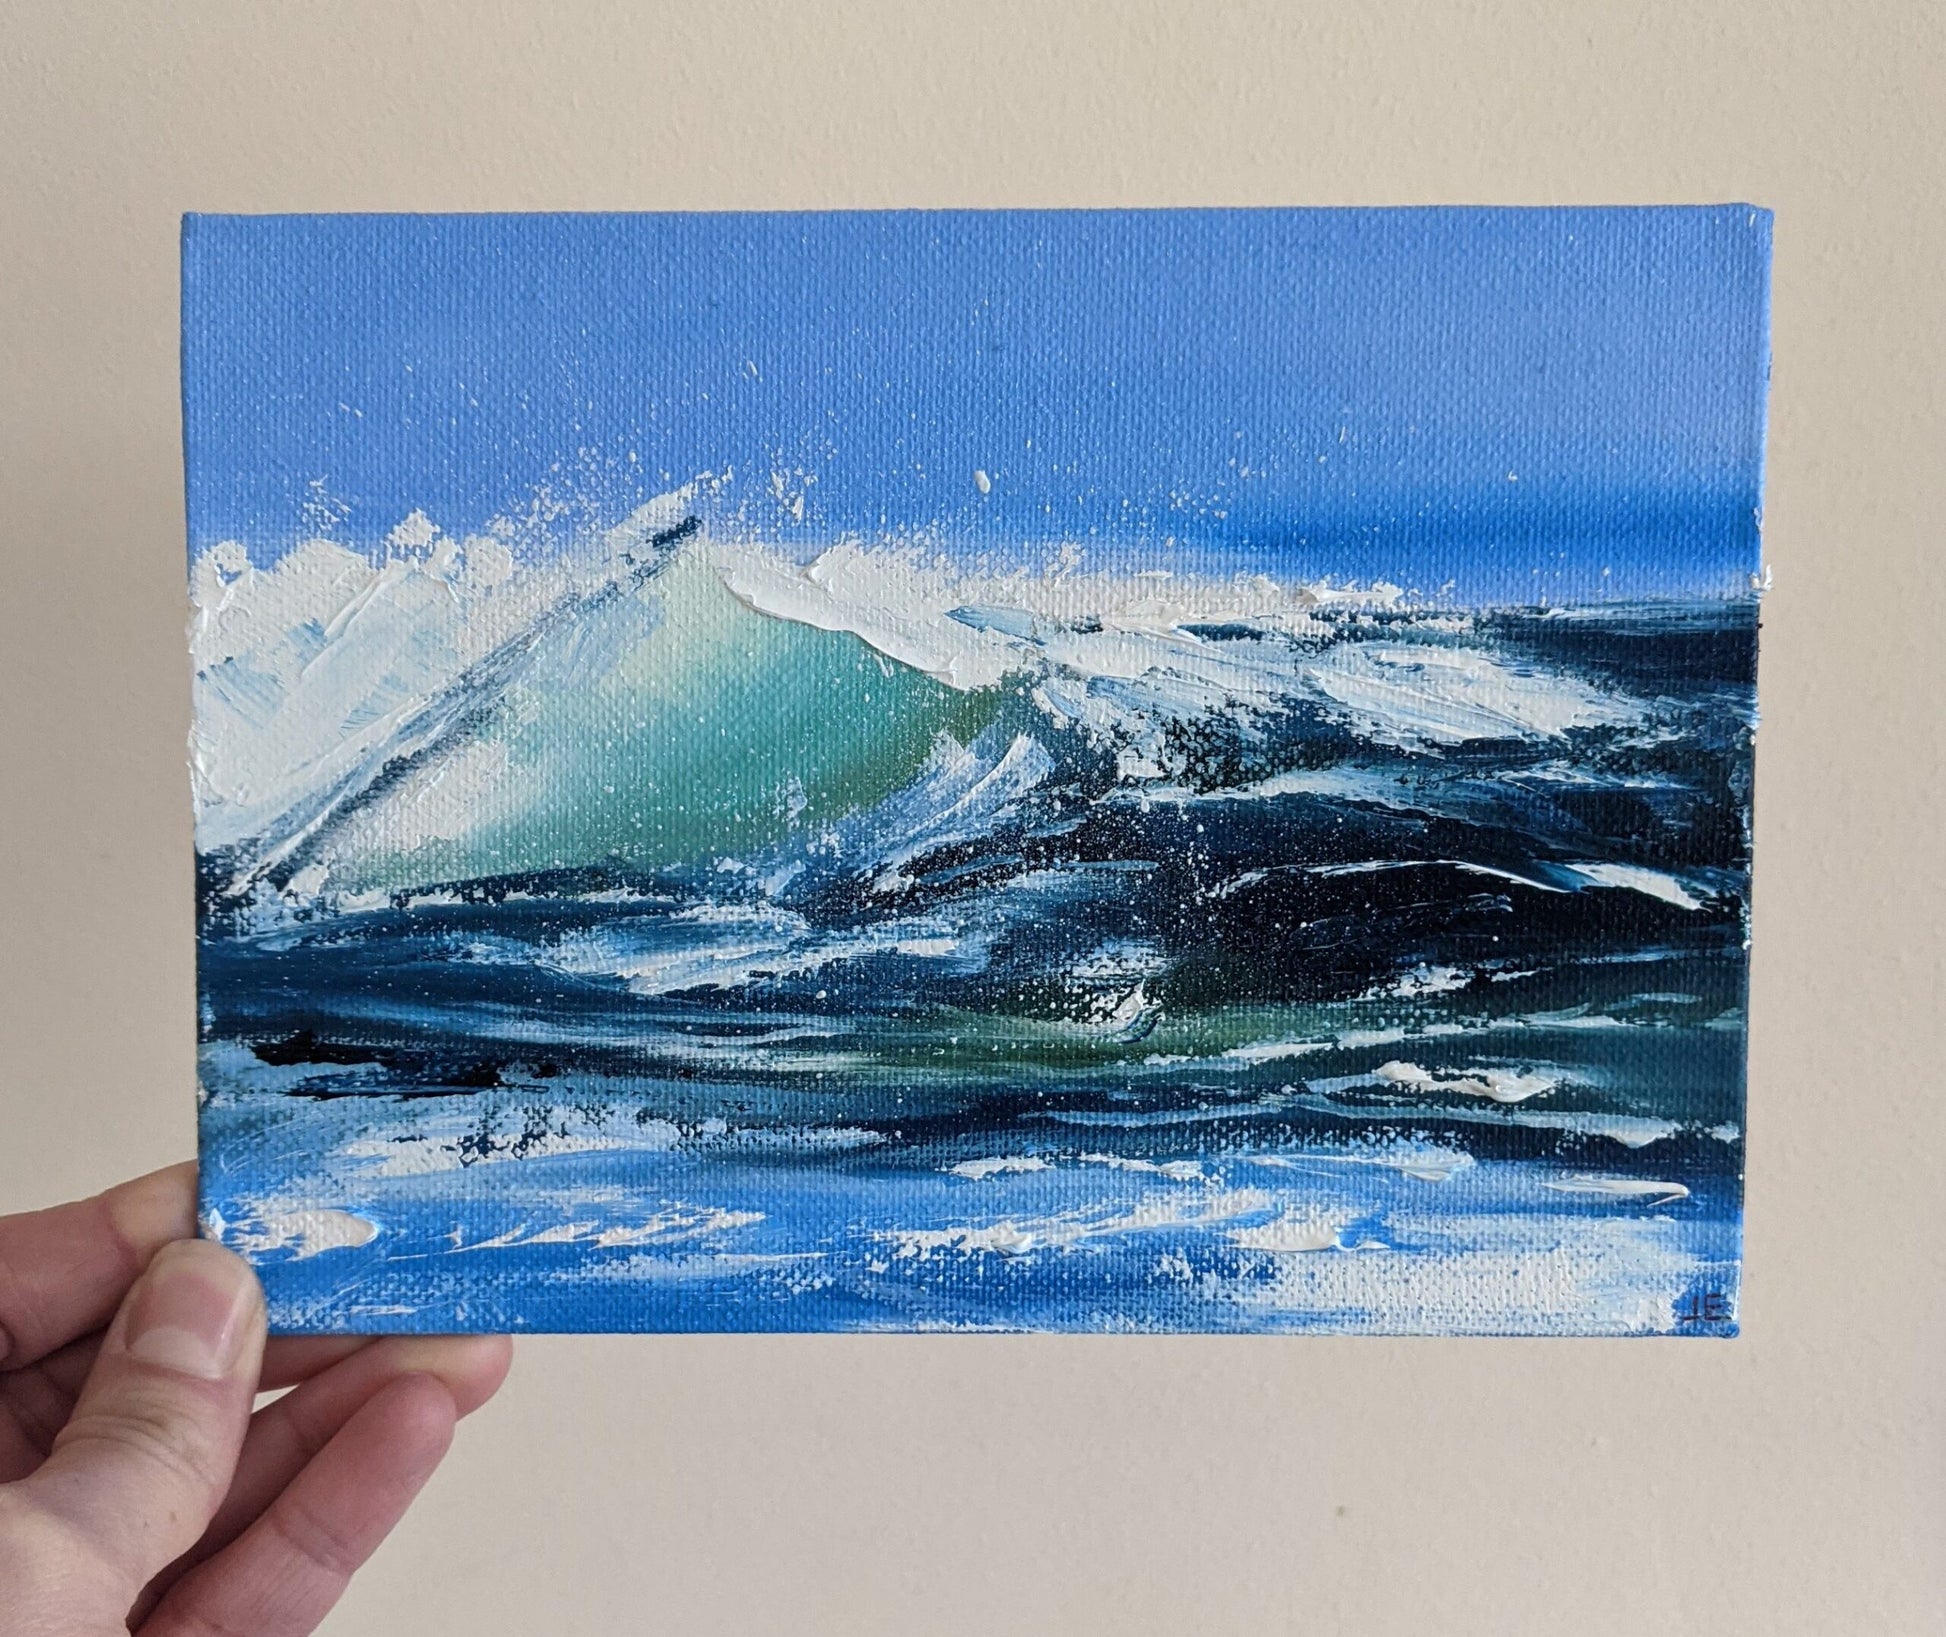 Miniature Wave Seascape #9 oil painting on canvas board in studio, by Jo Earl